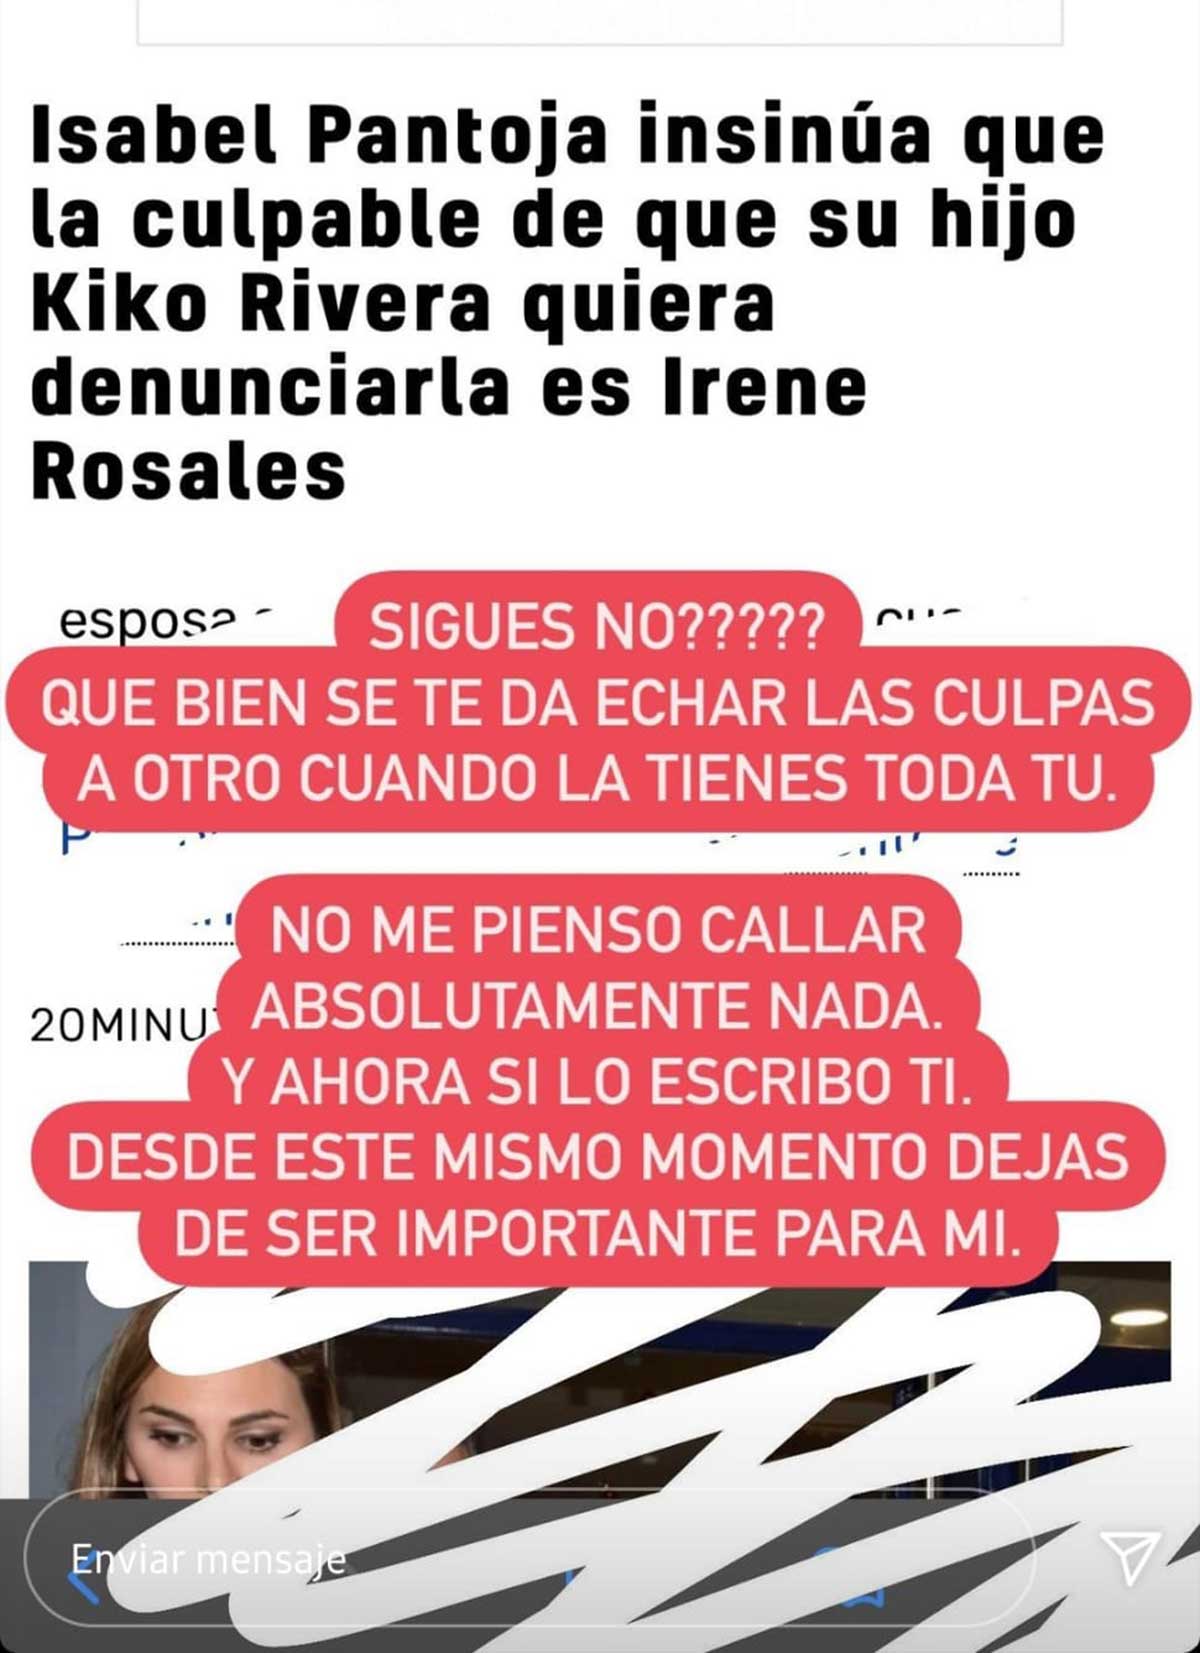 Kiko Rivera rompe definitivamente con su madre, Isabel Pantoja, tras culpar a Irene Rosales de todo